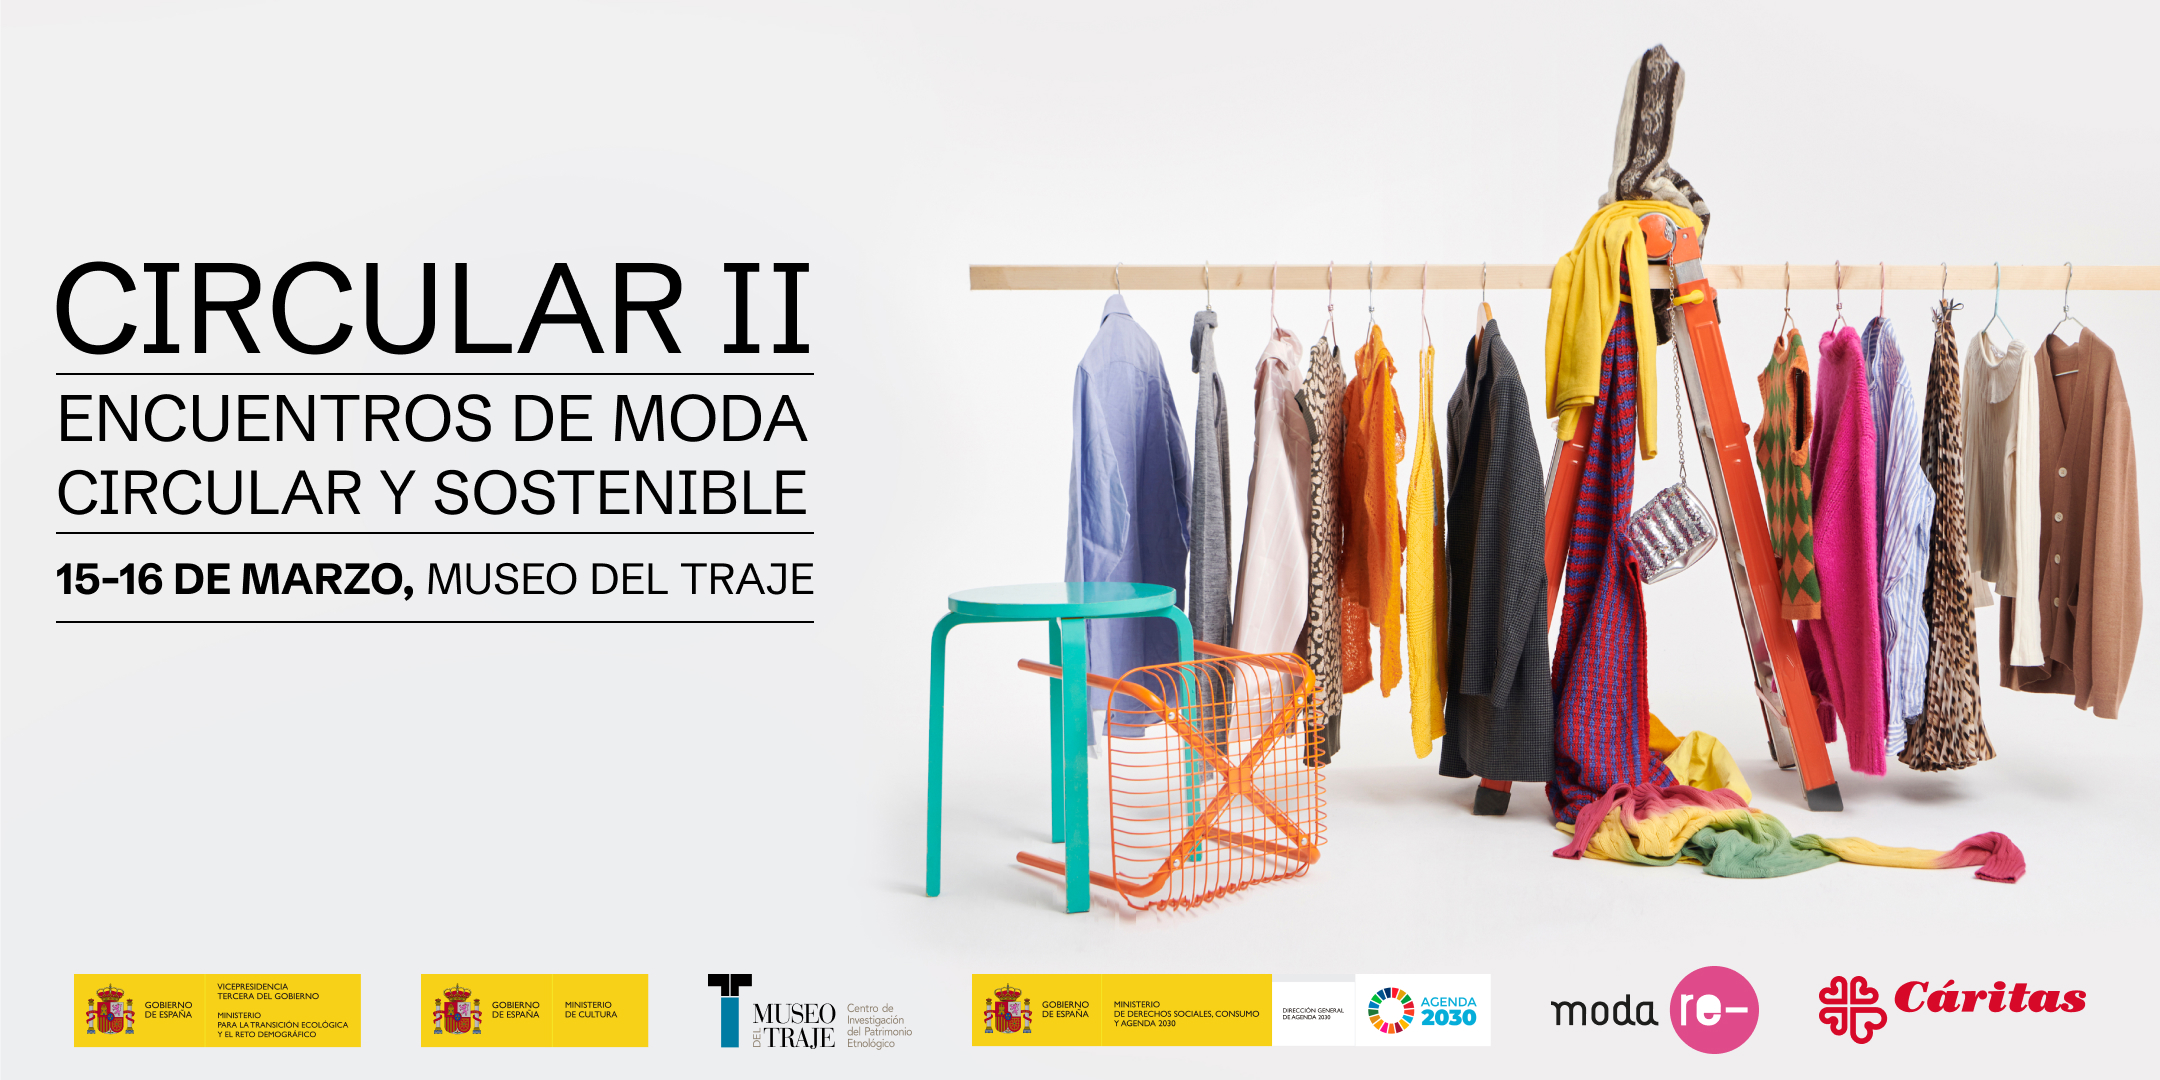 Moda re- presenta 'Circular II, Encuentros de moda circular y sostenible' el 15 y 16 de marzo en el Museo del Traje